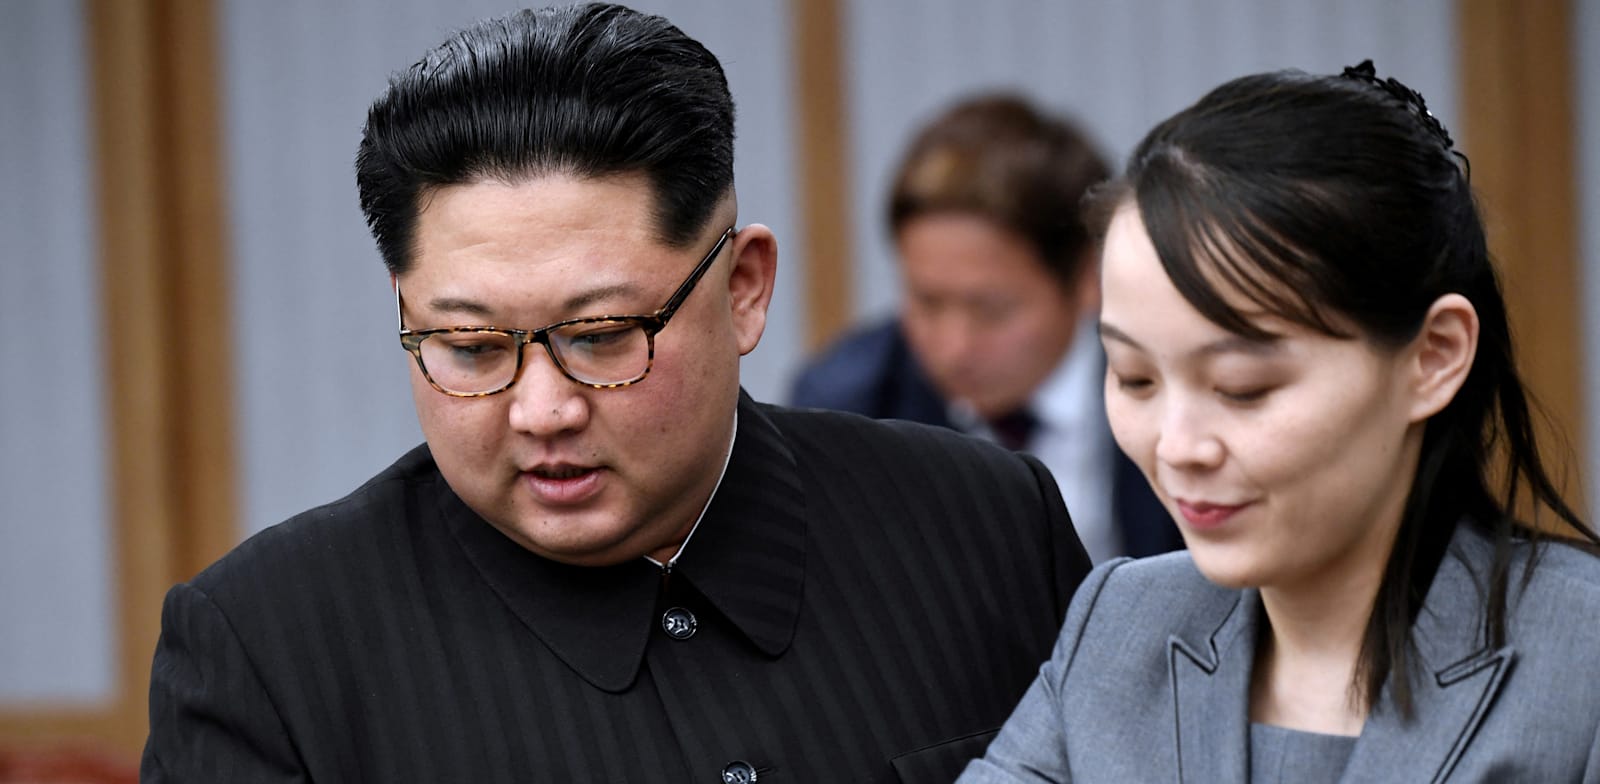 קים ג'ונג און ואחותו קים יו ג'ונג / צילום: Reuters, Korea Summit Press